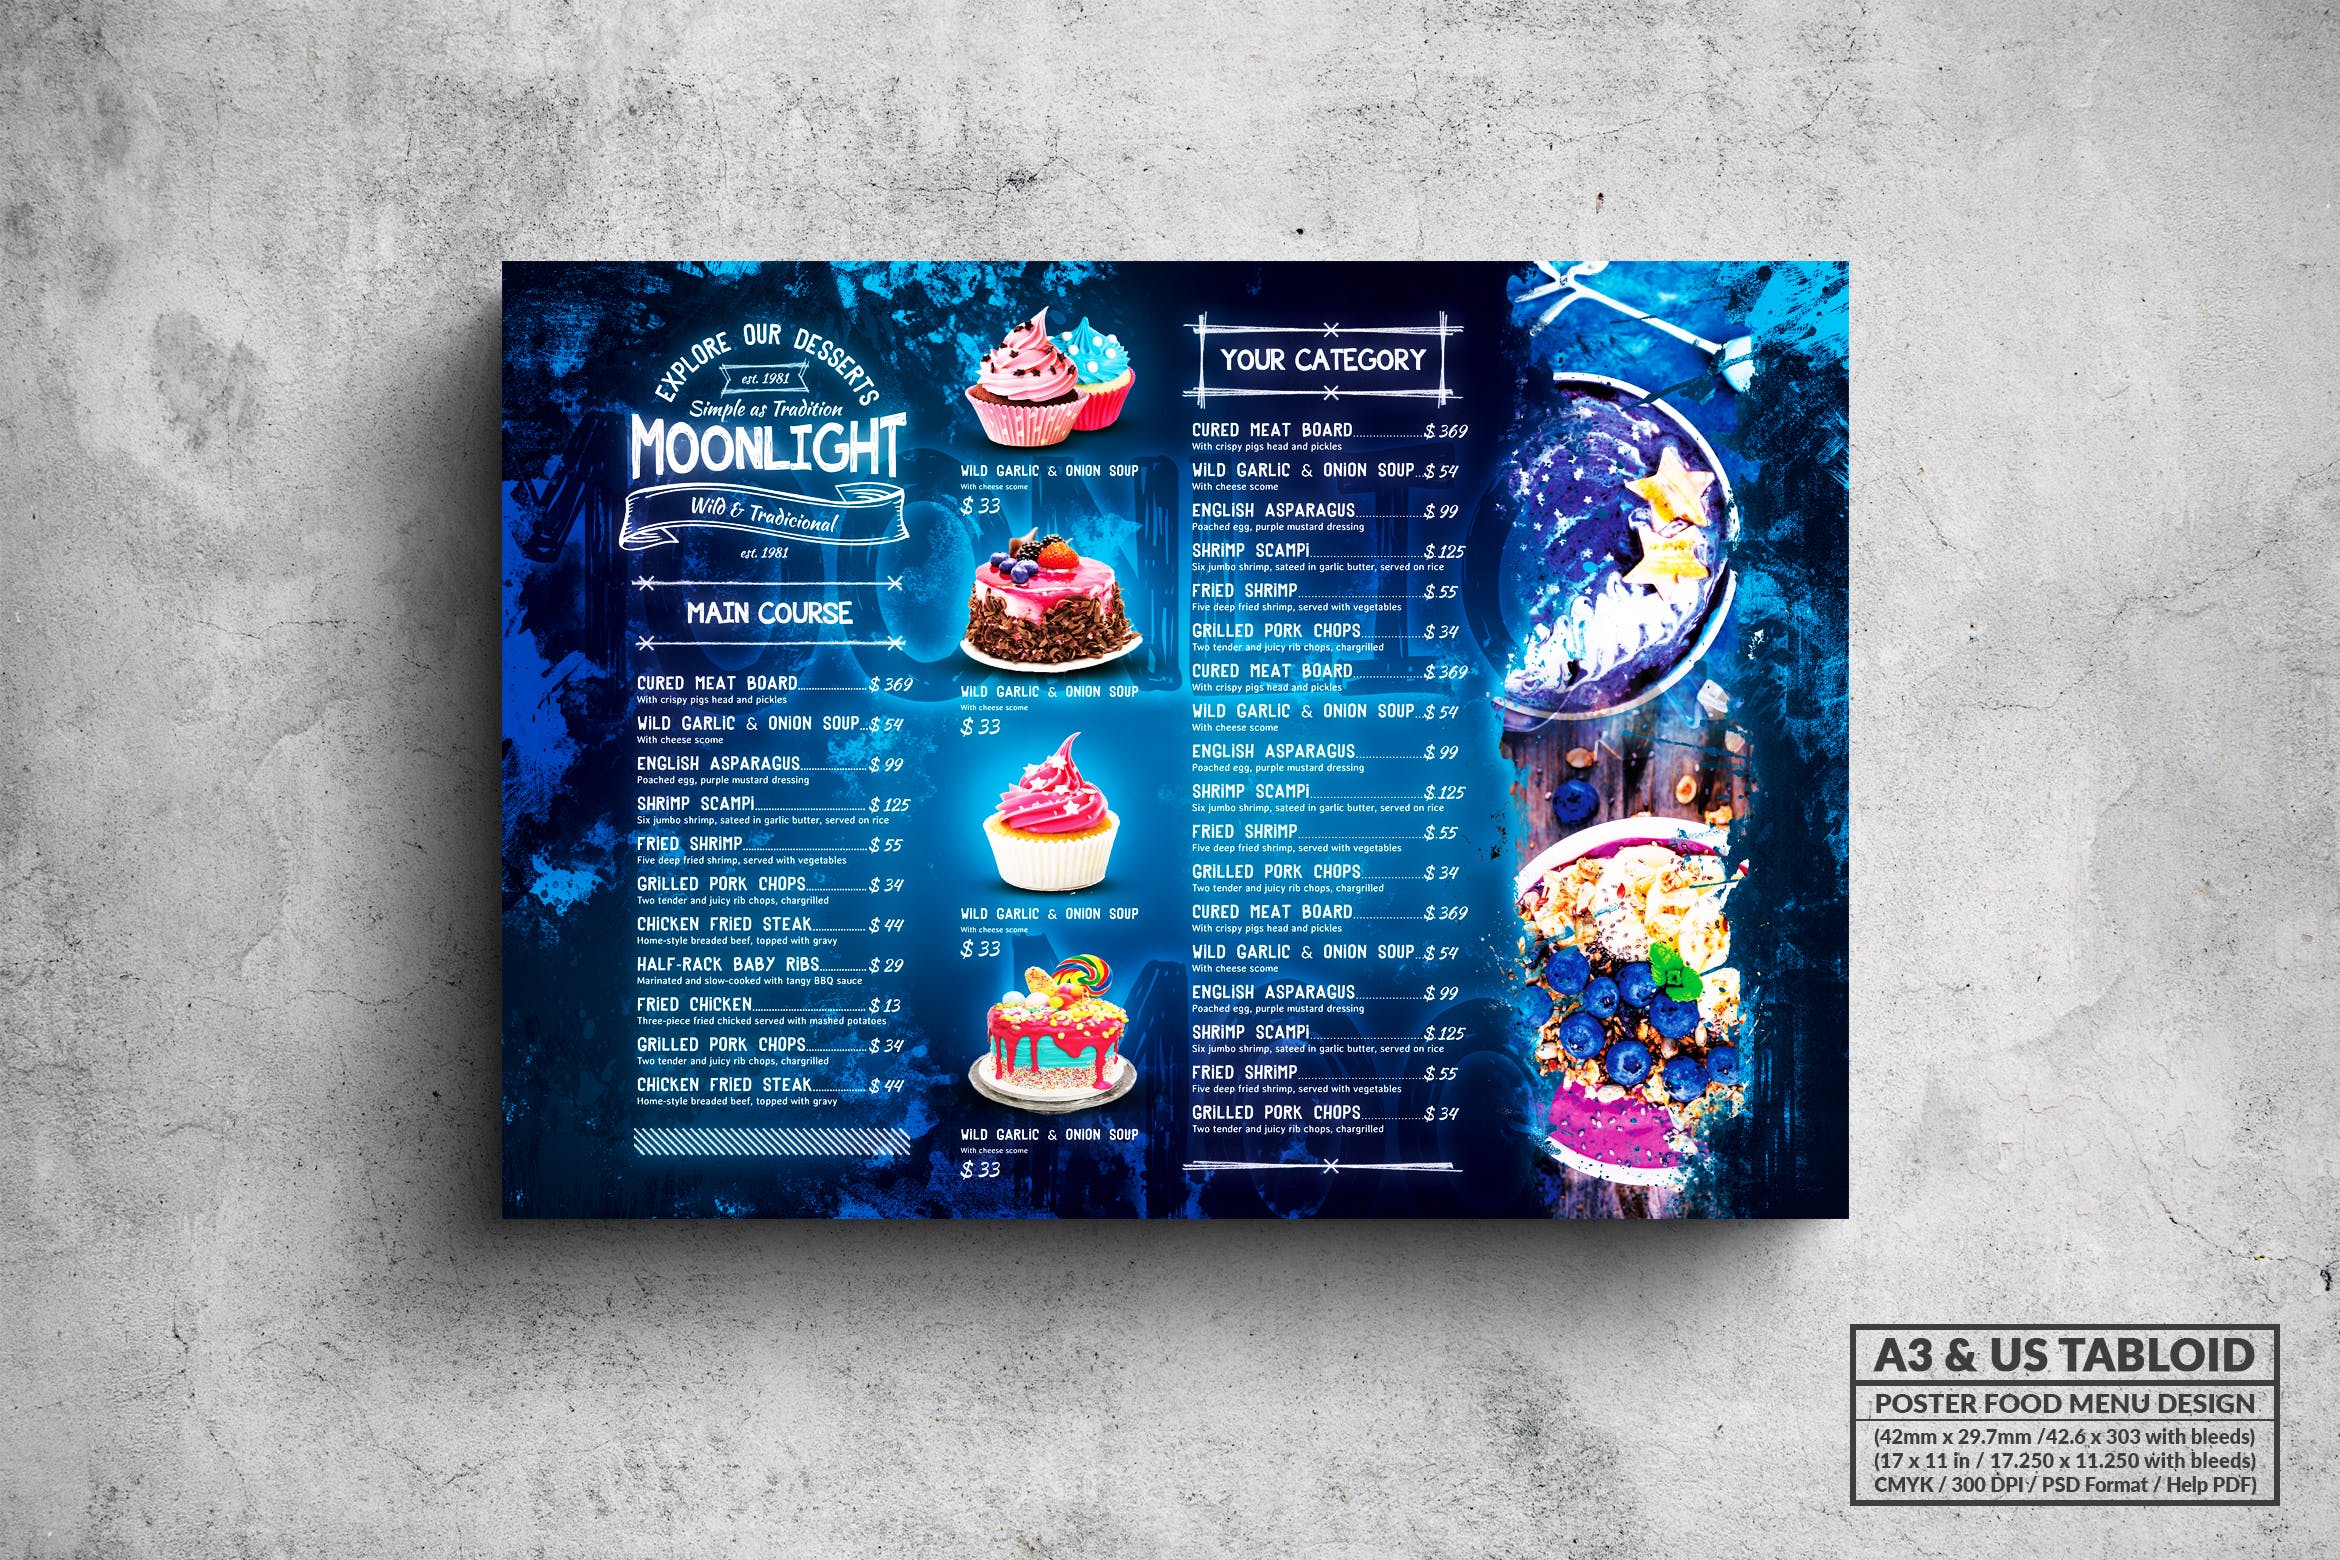 面包蛋糕店菜单海报PSD素材素材库精选模板 Moonlight Bakery Menu – A3 & US Tabloid Poster插图